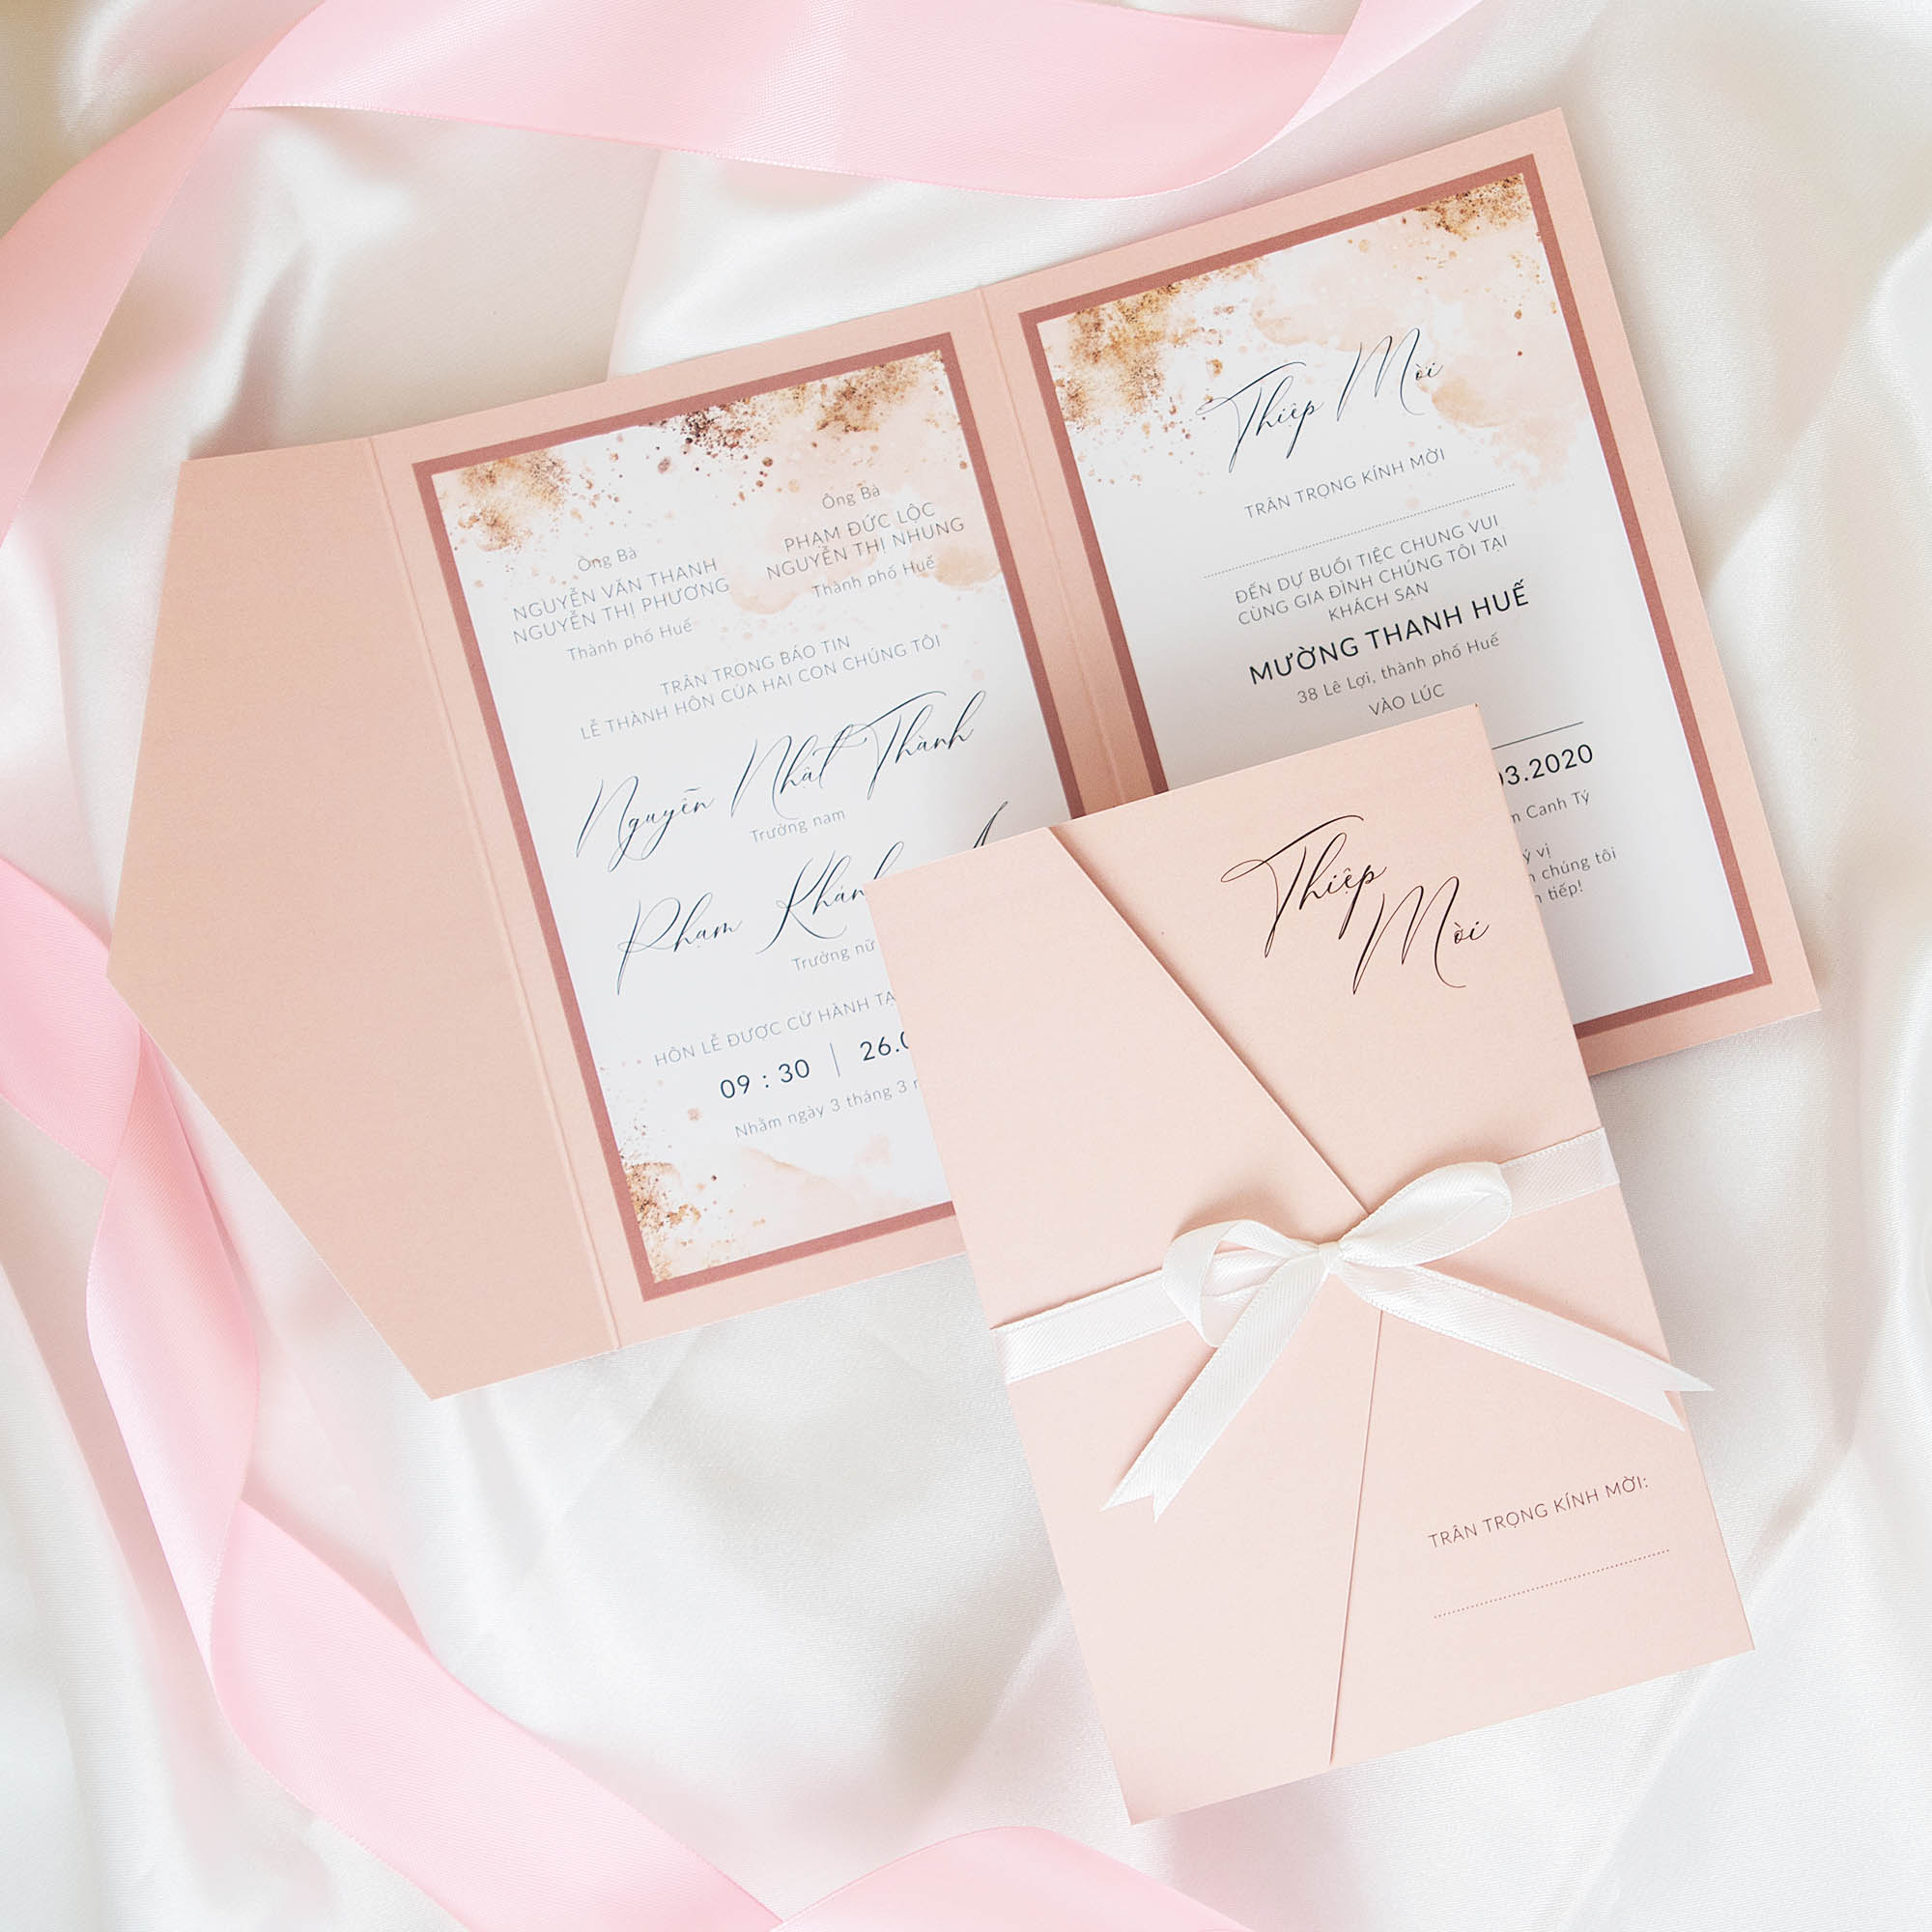 Thiệp cưới mở ba tông màu hồng phấn nhã nhặn | Hoạ tiết bụi vàng trên nền màu nước sang trọng | An Hieu Wedding